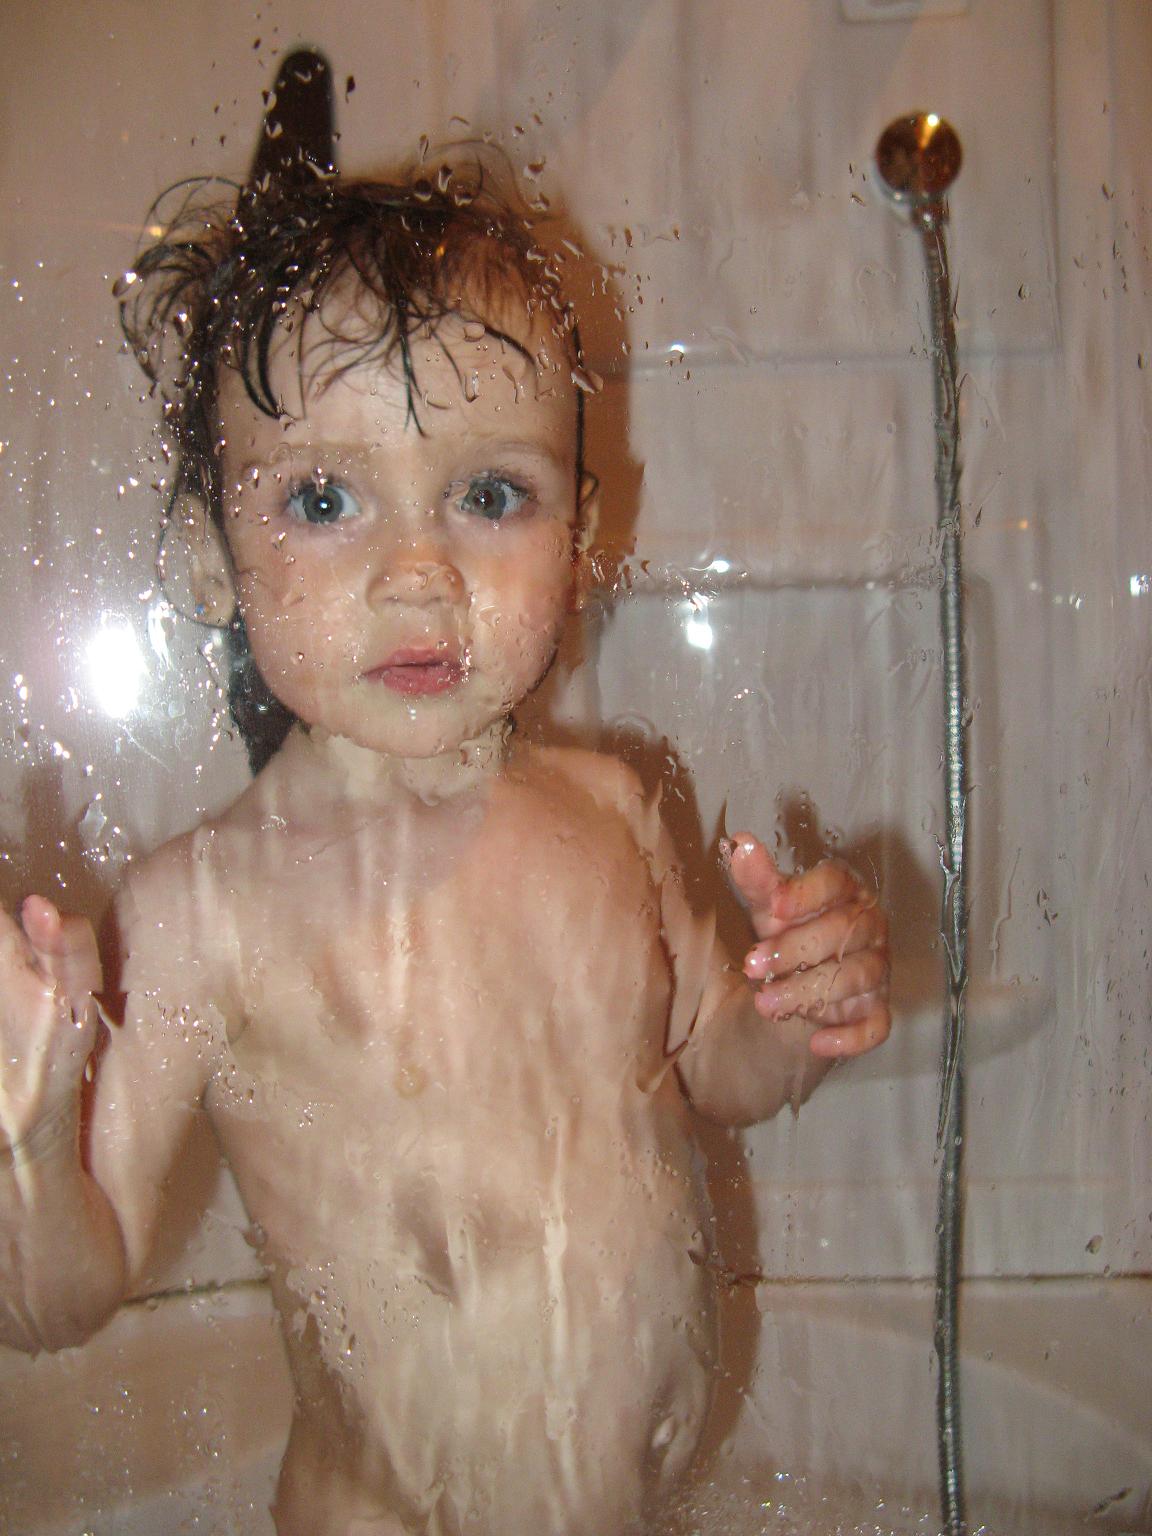 Дочка мылась в душе. Маенькиедевочки в душе. Девочка купается в ванне. Девочка купается в душе. Маленькие дети моются.